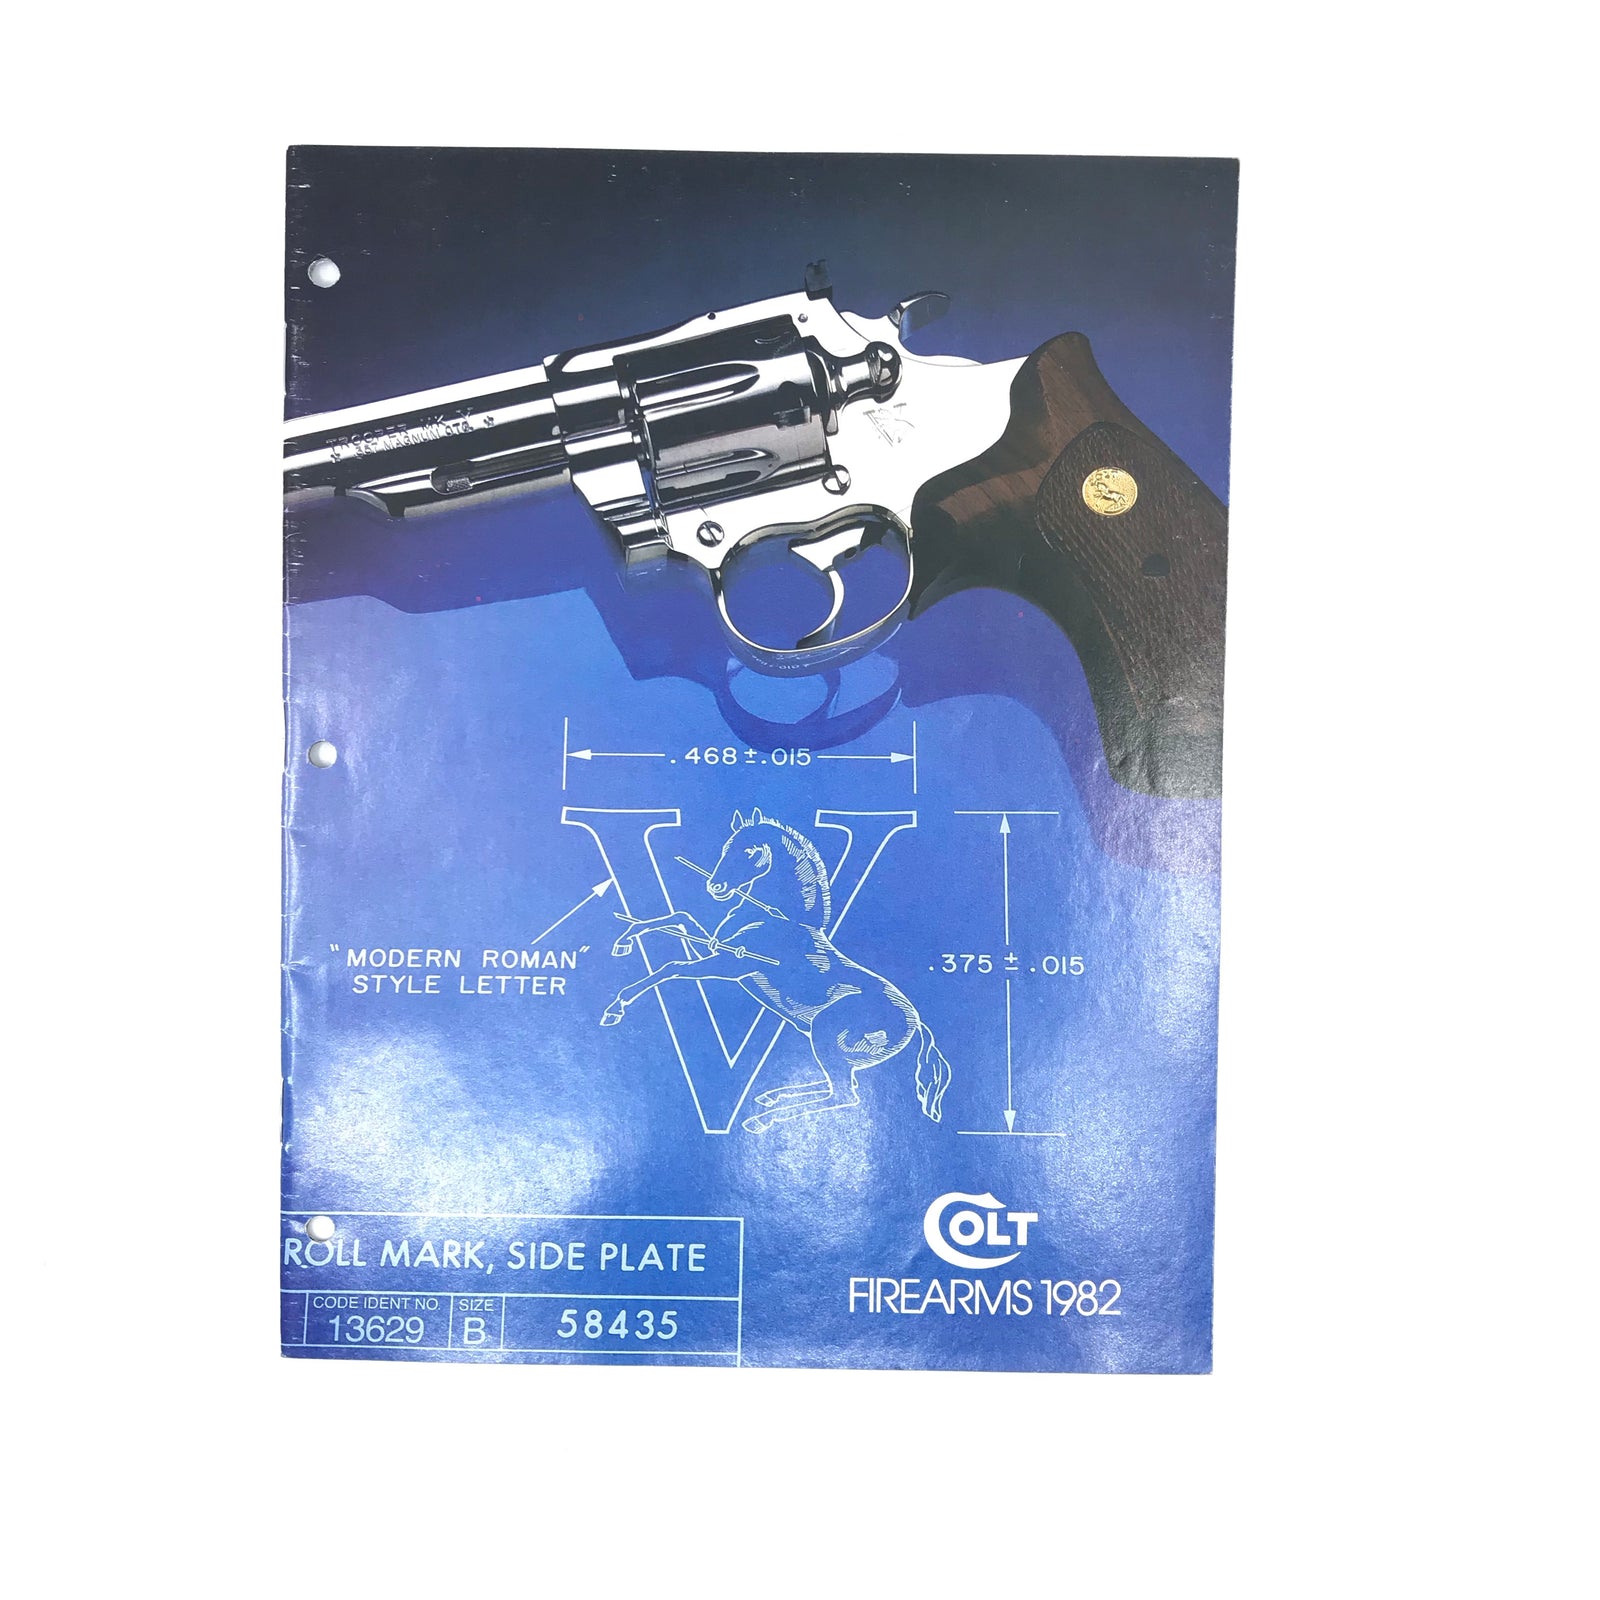 Colt Firearms 1982 Catalogue